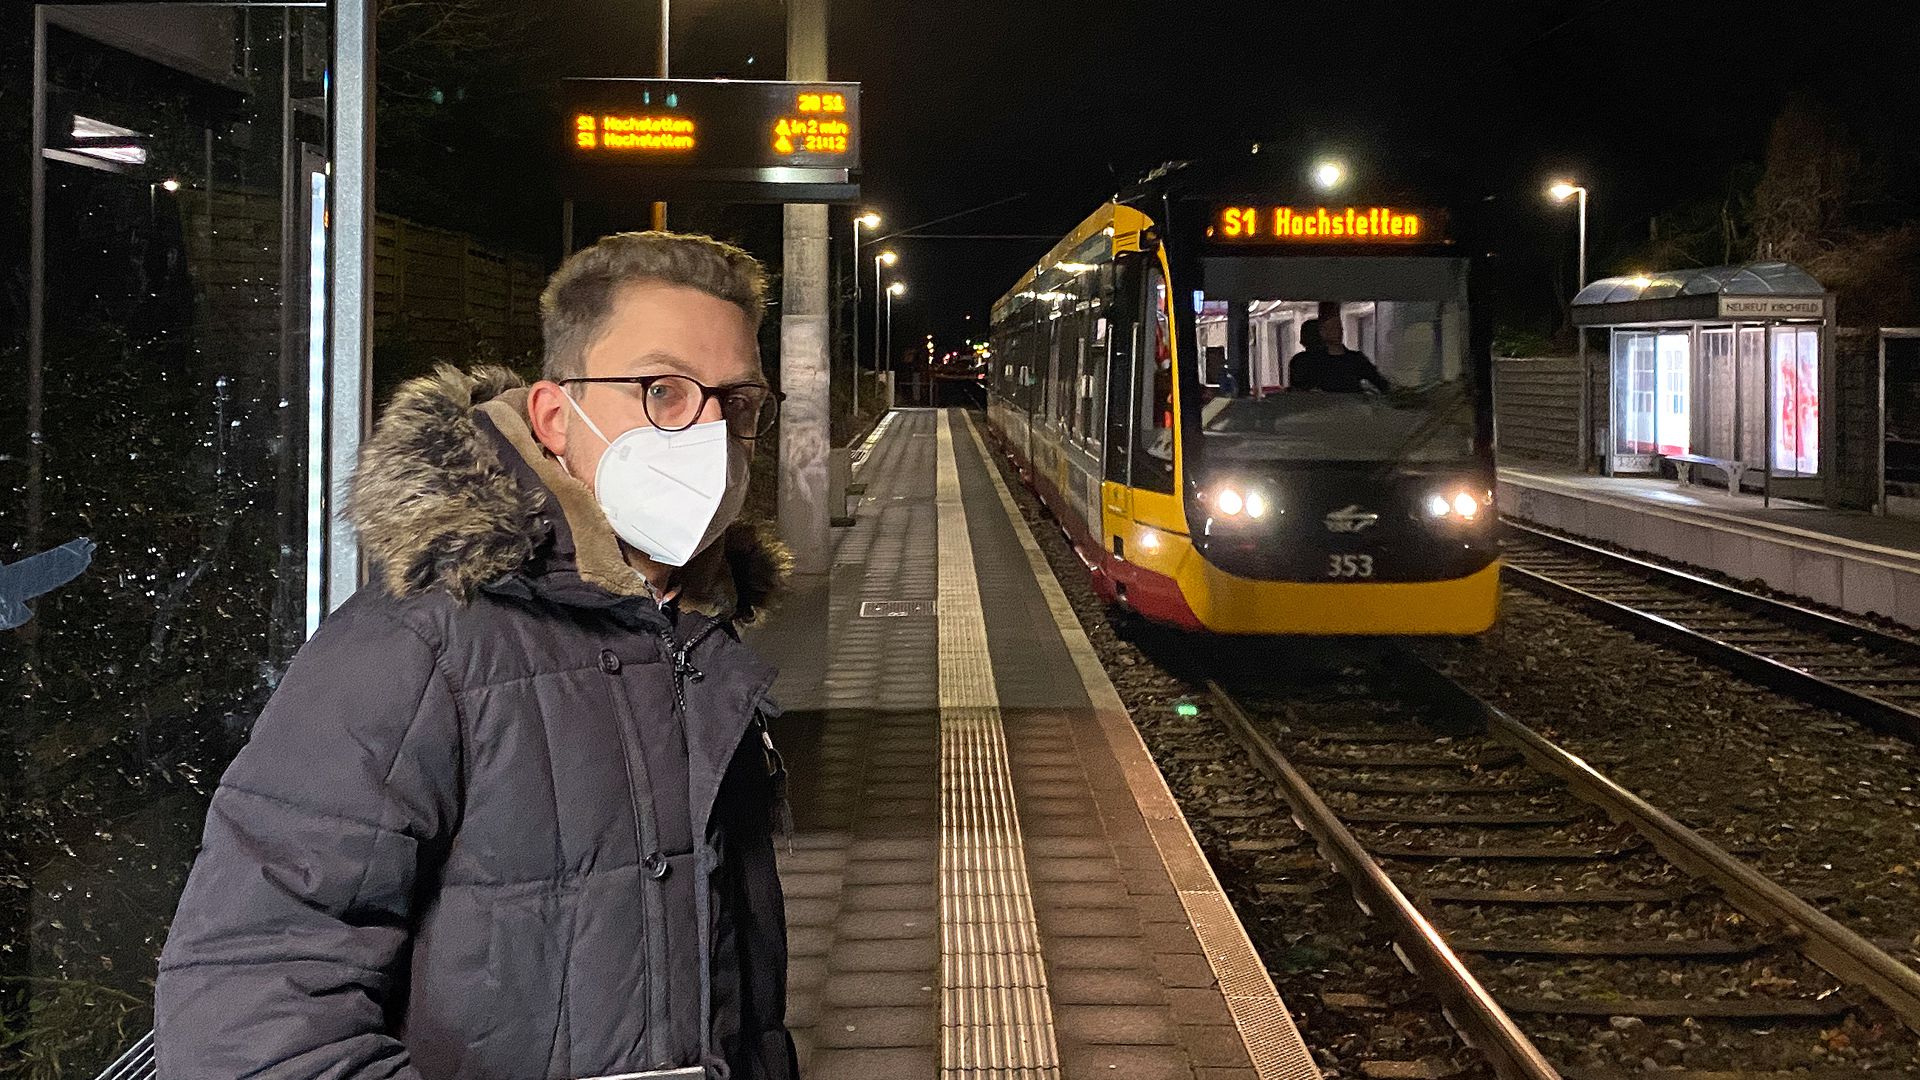 Mann mit Maske nachts am Bahnsteig, im Hintergrund eine Stadtbahn